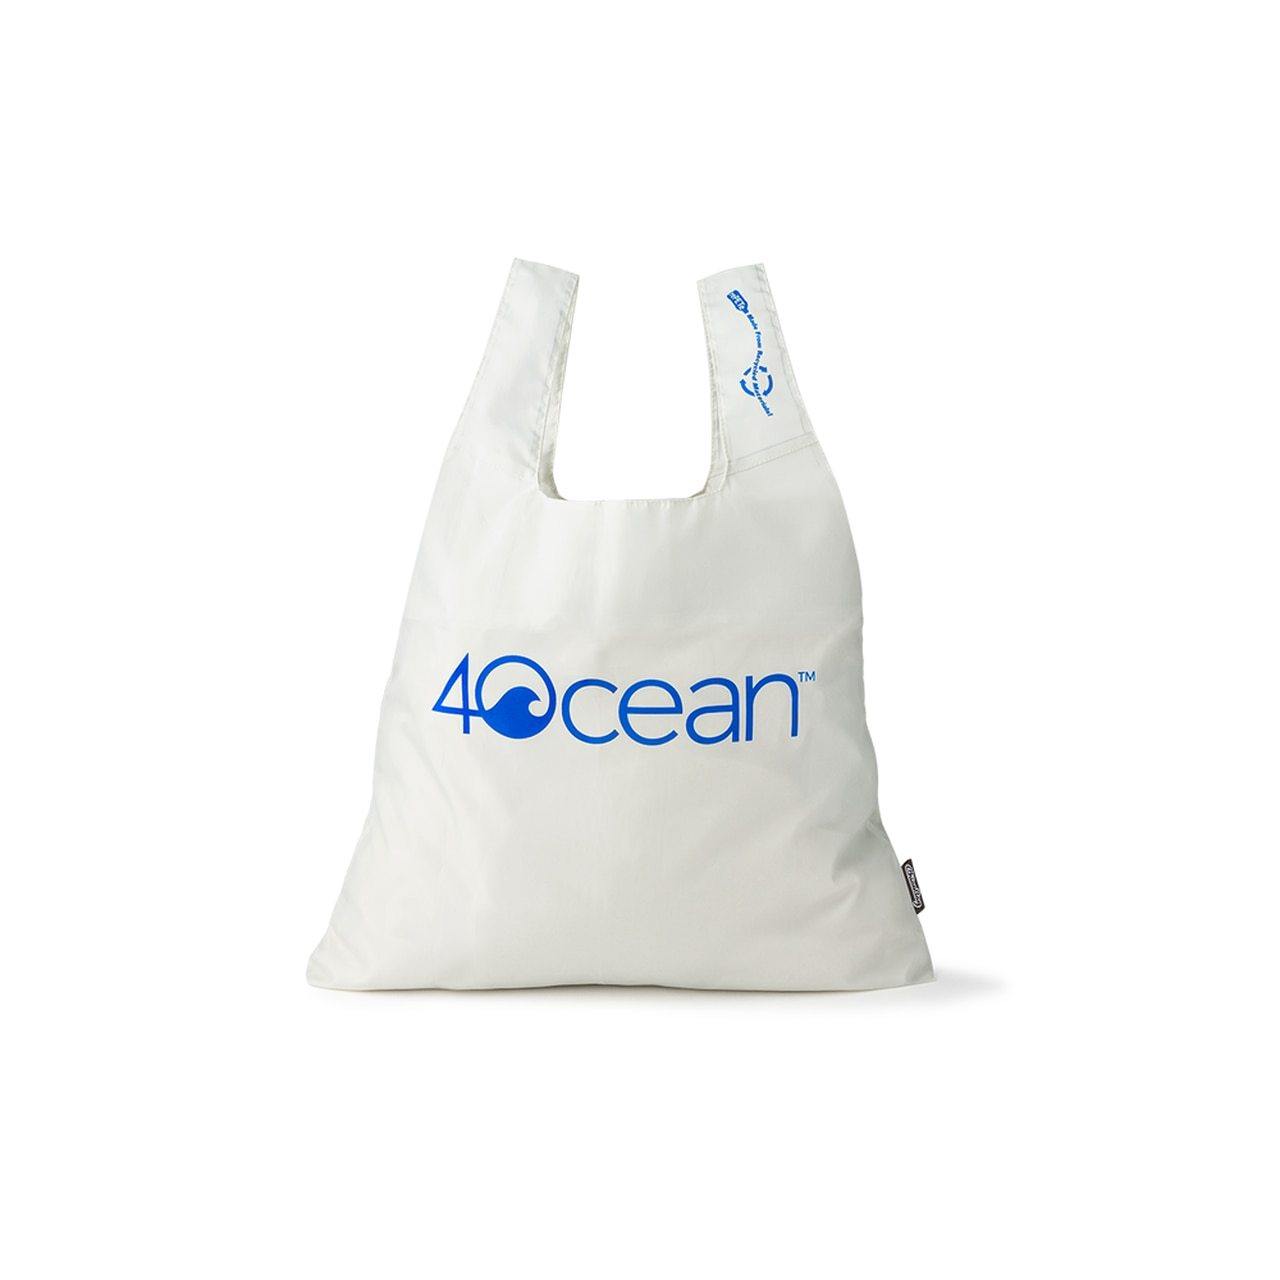 4ocean x ChicoBag Reusable Shopping Bag - 4ocean